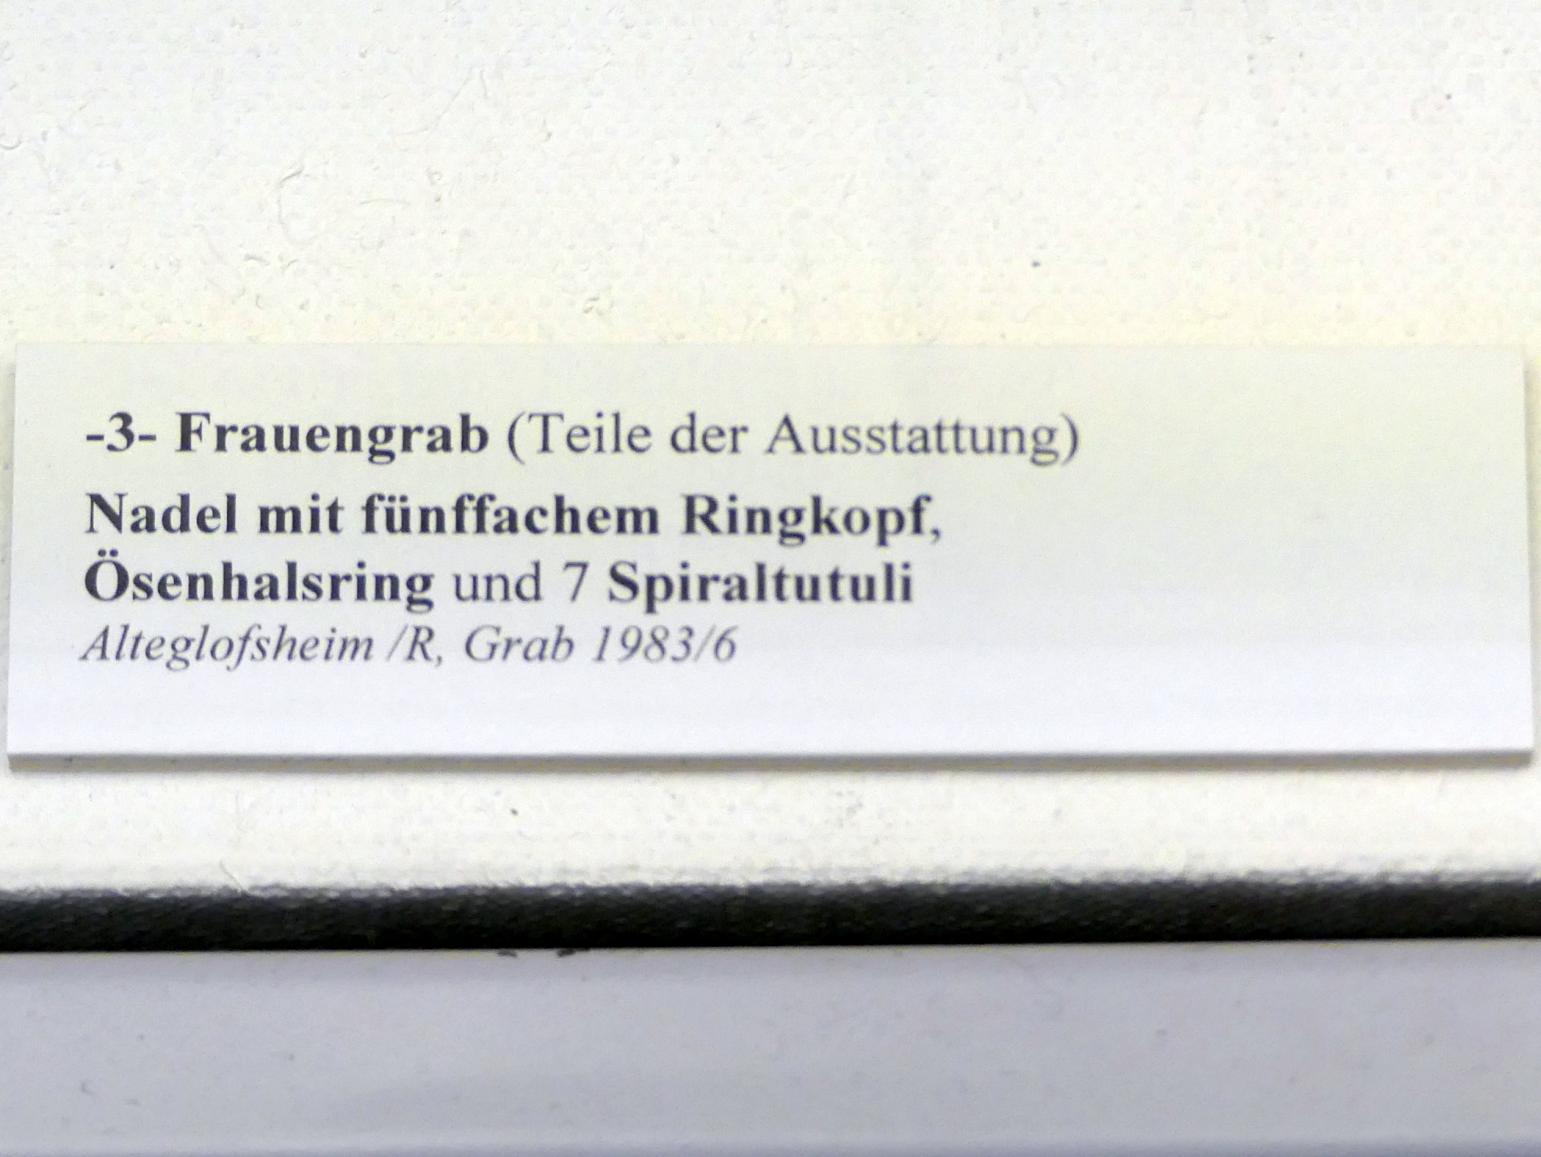 Nadel mit fünffachem Ringkopf, Frühe Bronzezeit, 3365 - 1200 v. Chr., Bild 2/2